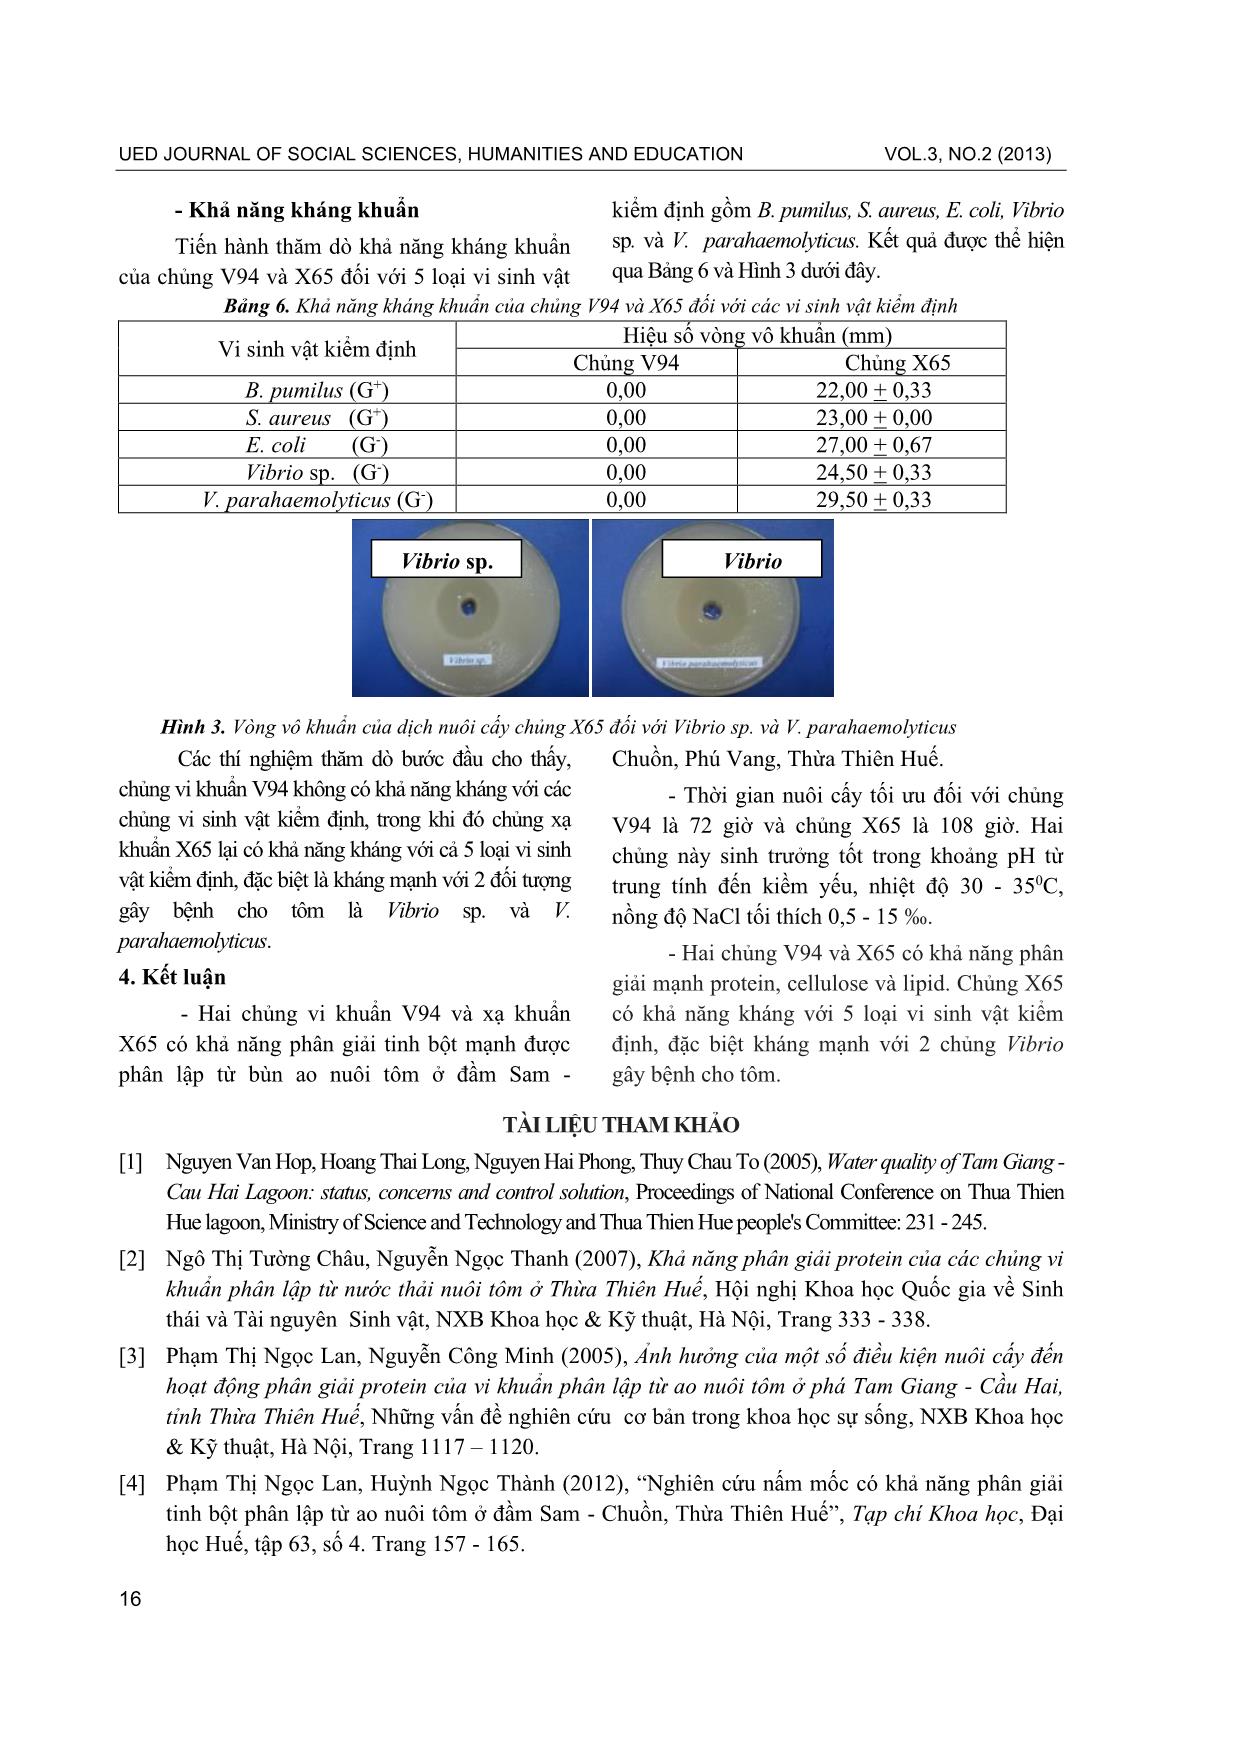 Nghiên cứu một số nhóm vi sinh vật phân giải tinh bột trong ao nuôi tôm ở Đầm Sam - Chuồn, Phú Vang, Thừa Thiên Huế trang 5